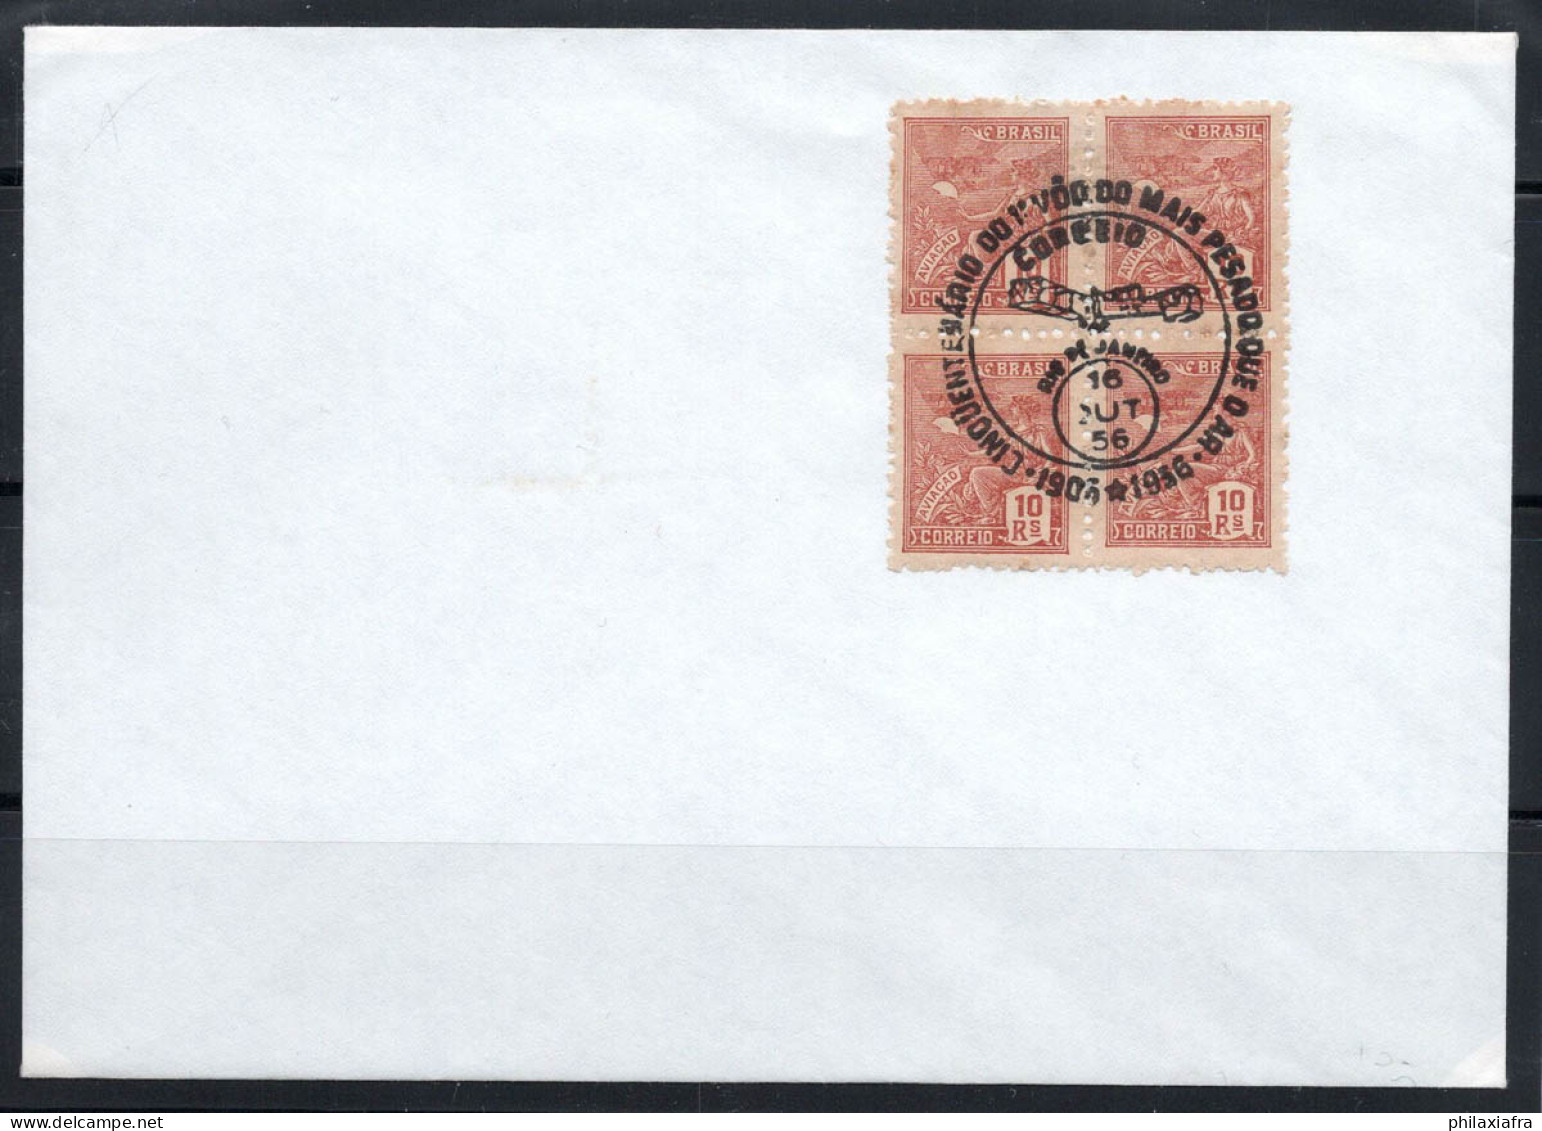 Brésil 1956 Enveloppe 100% Poste Aérienne Rio De Janiero - Covers & Documents